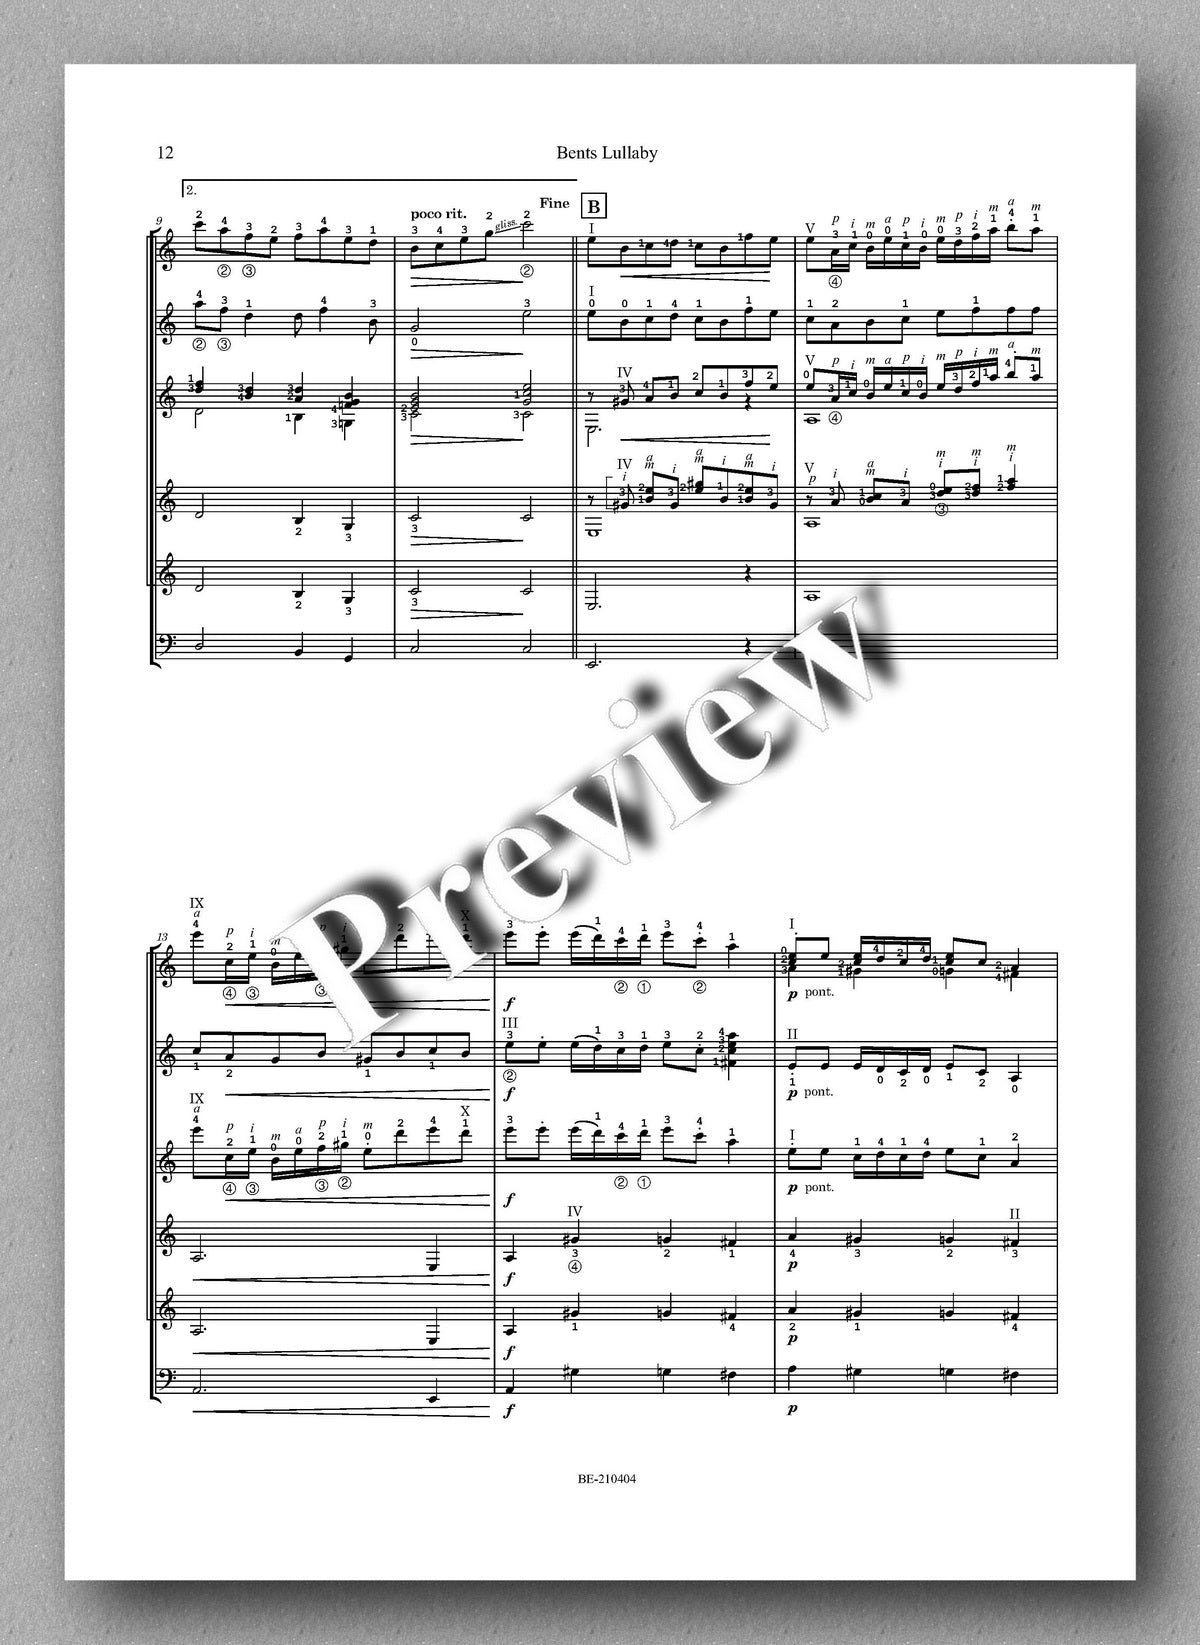 Andersen, Den gale trold - Bents Lullaby - music score 4